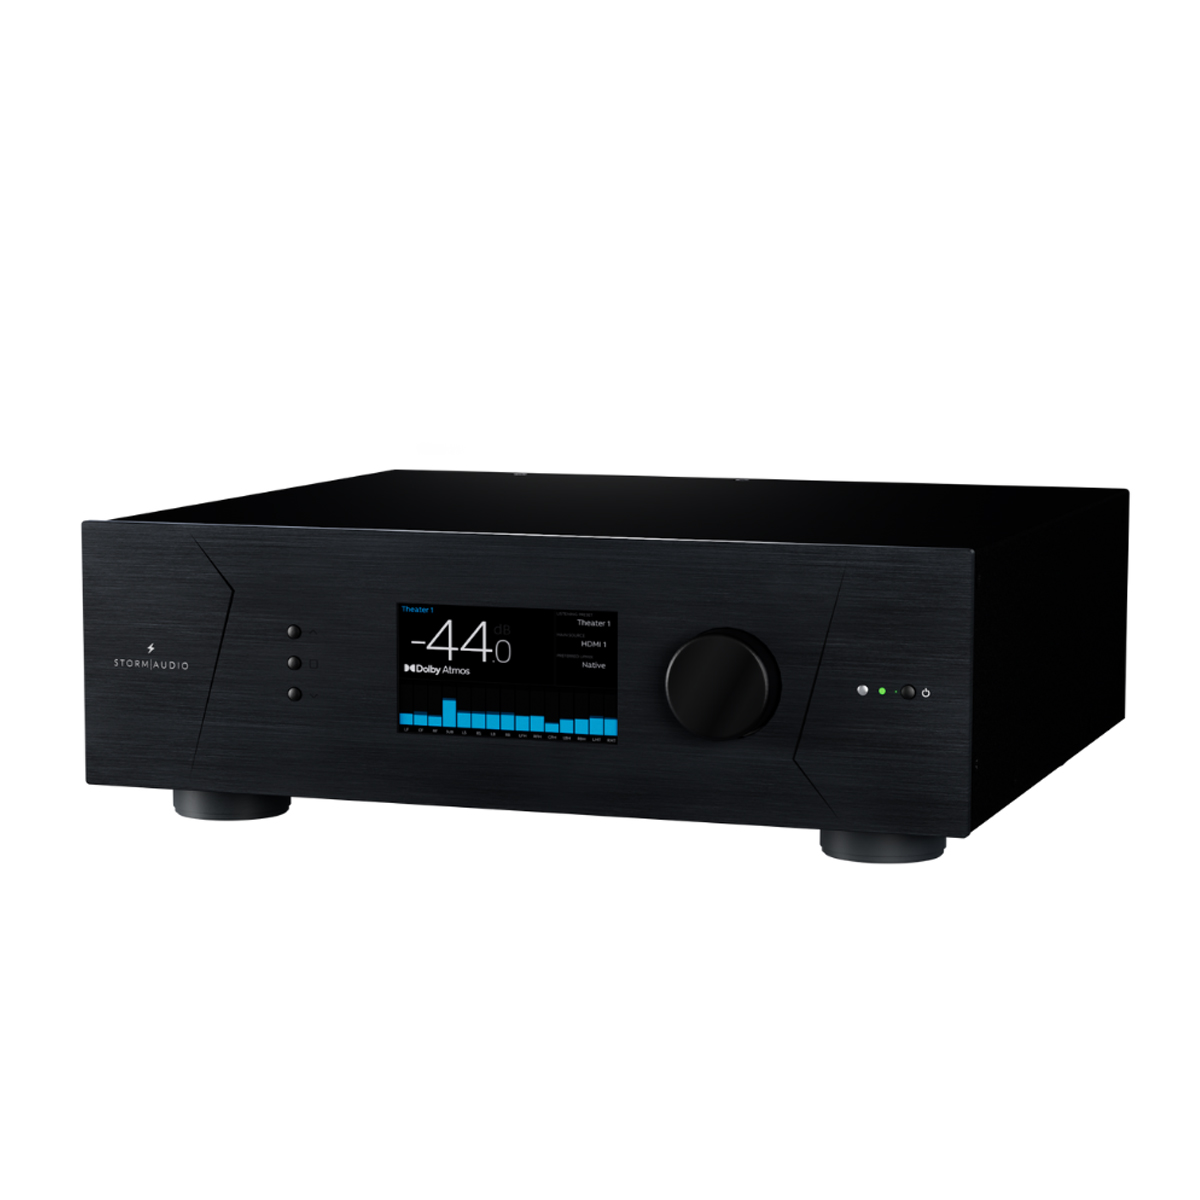 StormAudio ISP EVO 20 AoIP Volldigitaler Soundprozessor (1)